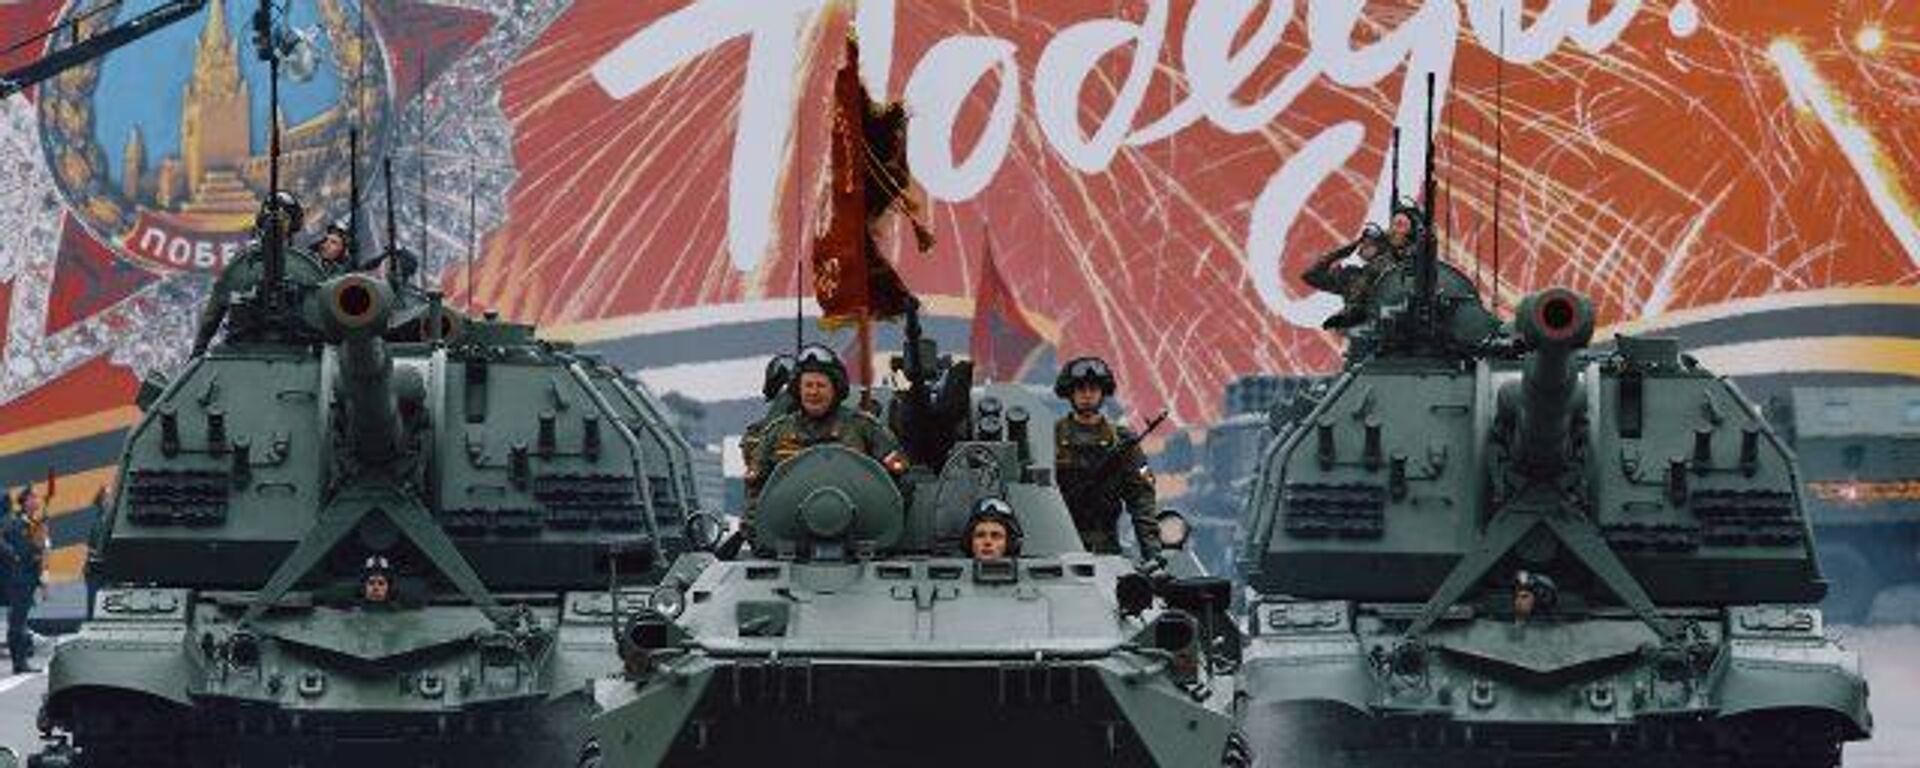 Финальная готовность: На Красной площади прошла генеральная репетиция парада Победы - Sputnik Узбекистан, 1920, 08.05.2021